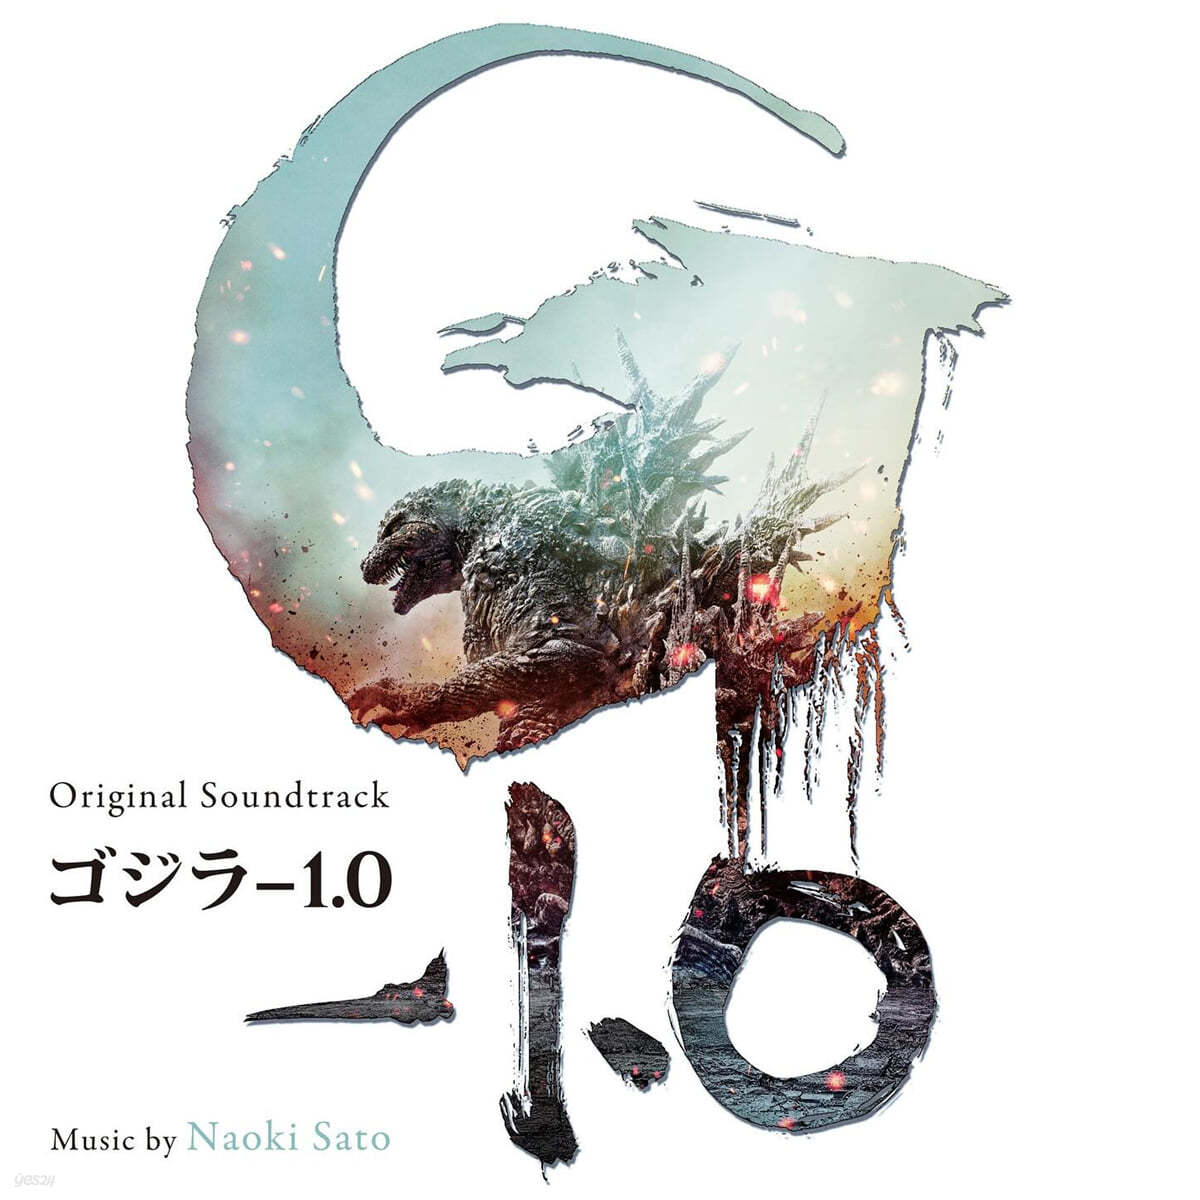 고지라 마이너스 원 영화음악 (Godzilla -1.0 OST by Naoki Sato) [2LP]